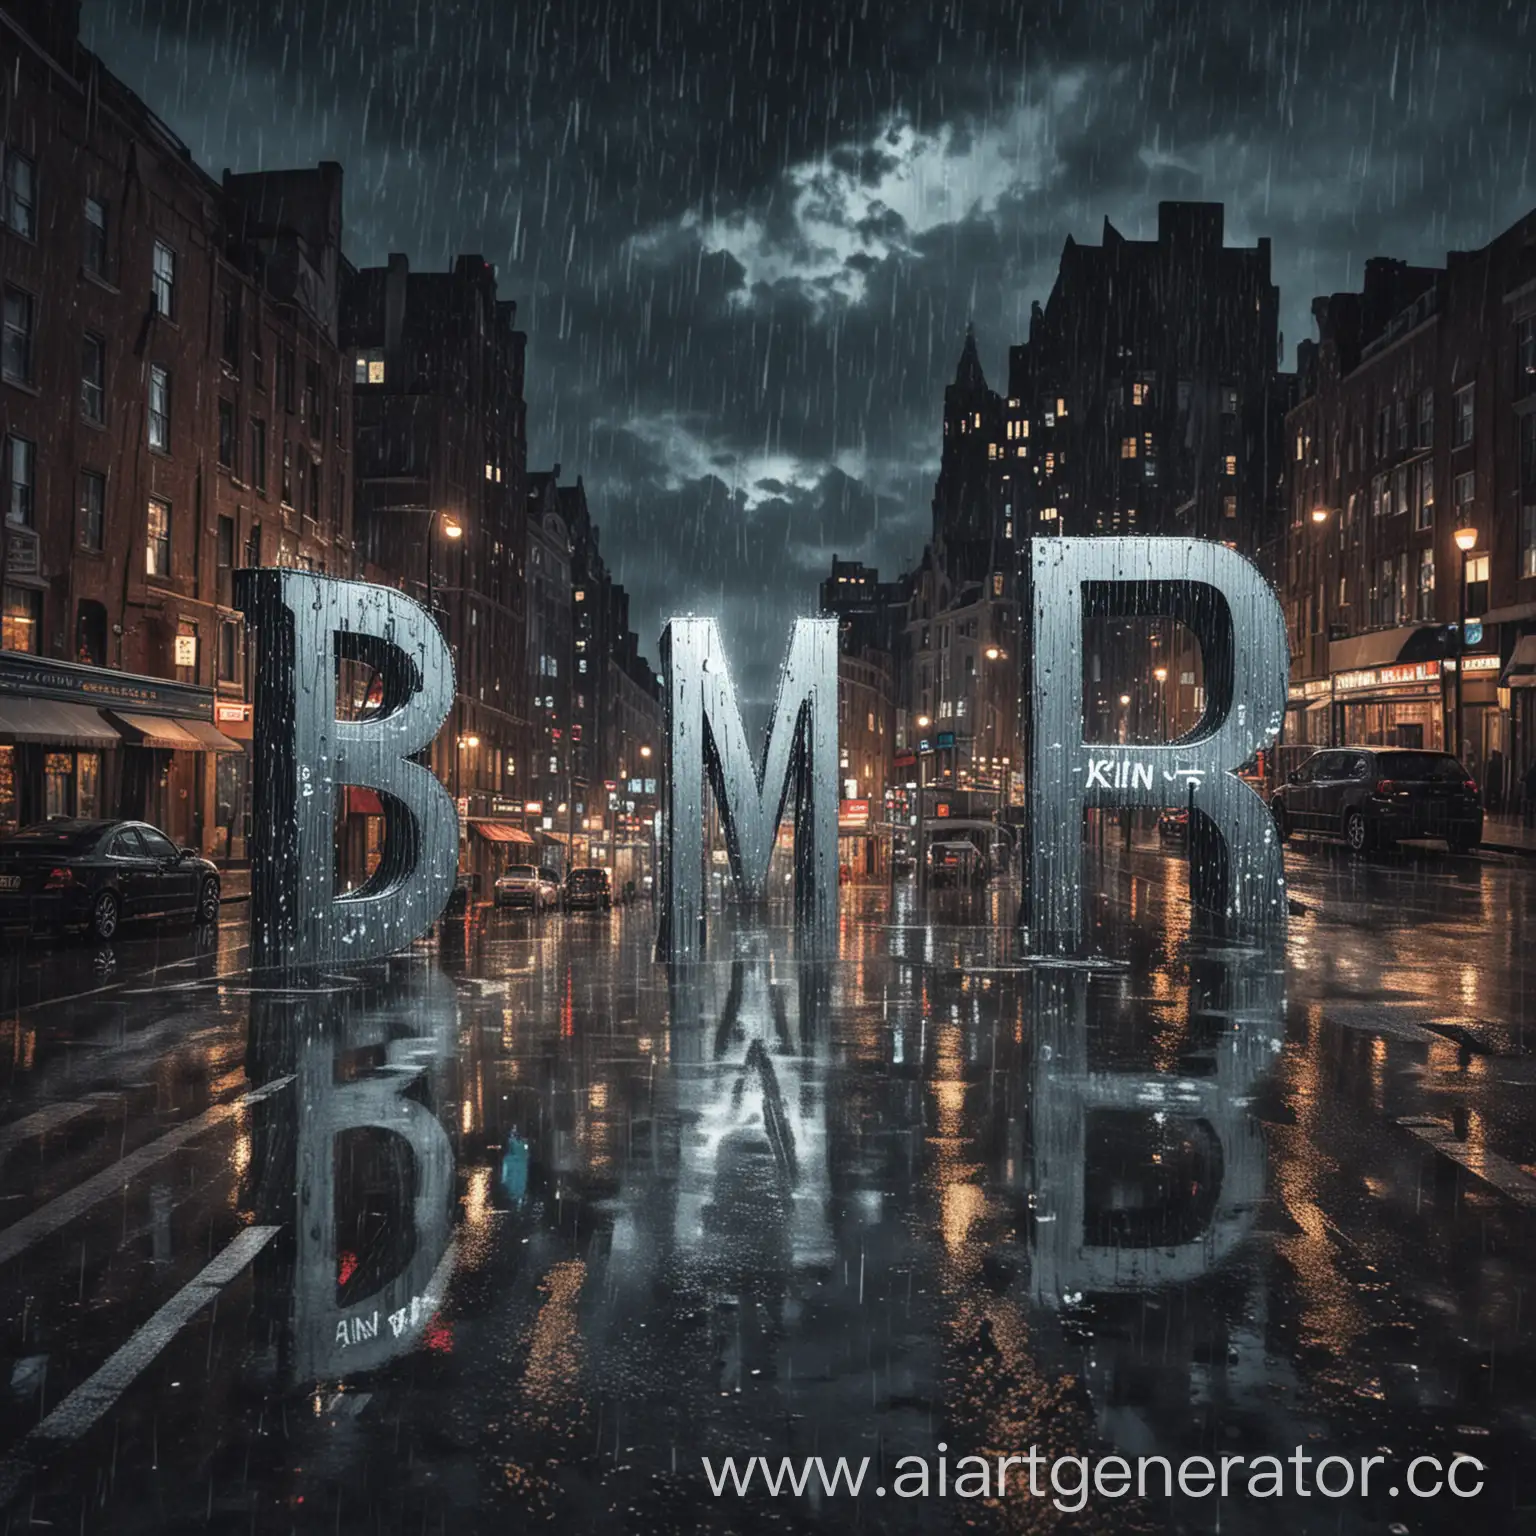 Нарисуй картинку для альбома музыки где на английском  большие буквы B M R и маленькие ain на фоне ночного дождя в городе и все напоминает музыку